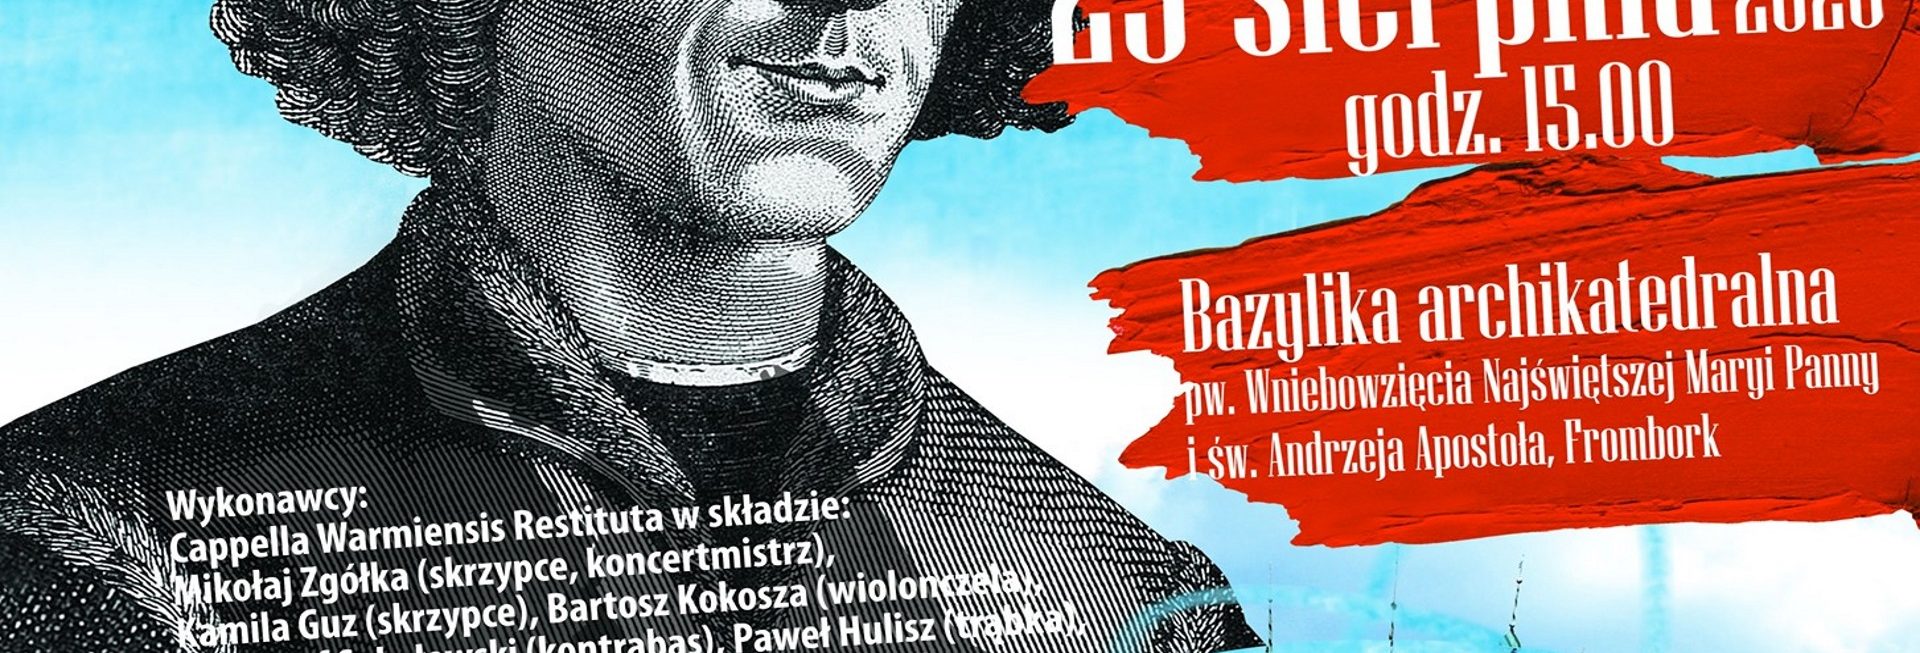 Plakat zapraszający do Fromborka na koncert Musica Warmiensis - Frombork 2020. Na plakacie graficzna postać Kopernika oraz szczegółowy program i wymienieni wykonawcy i artyści koncertu.  